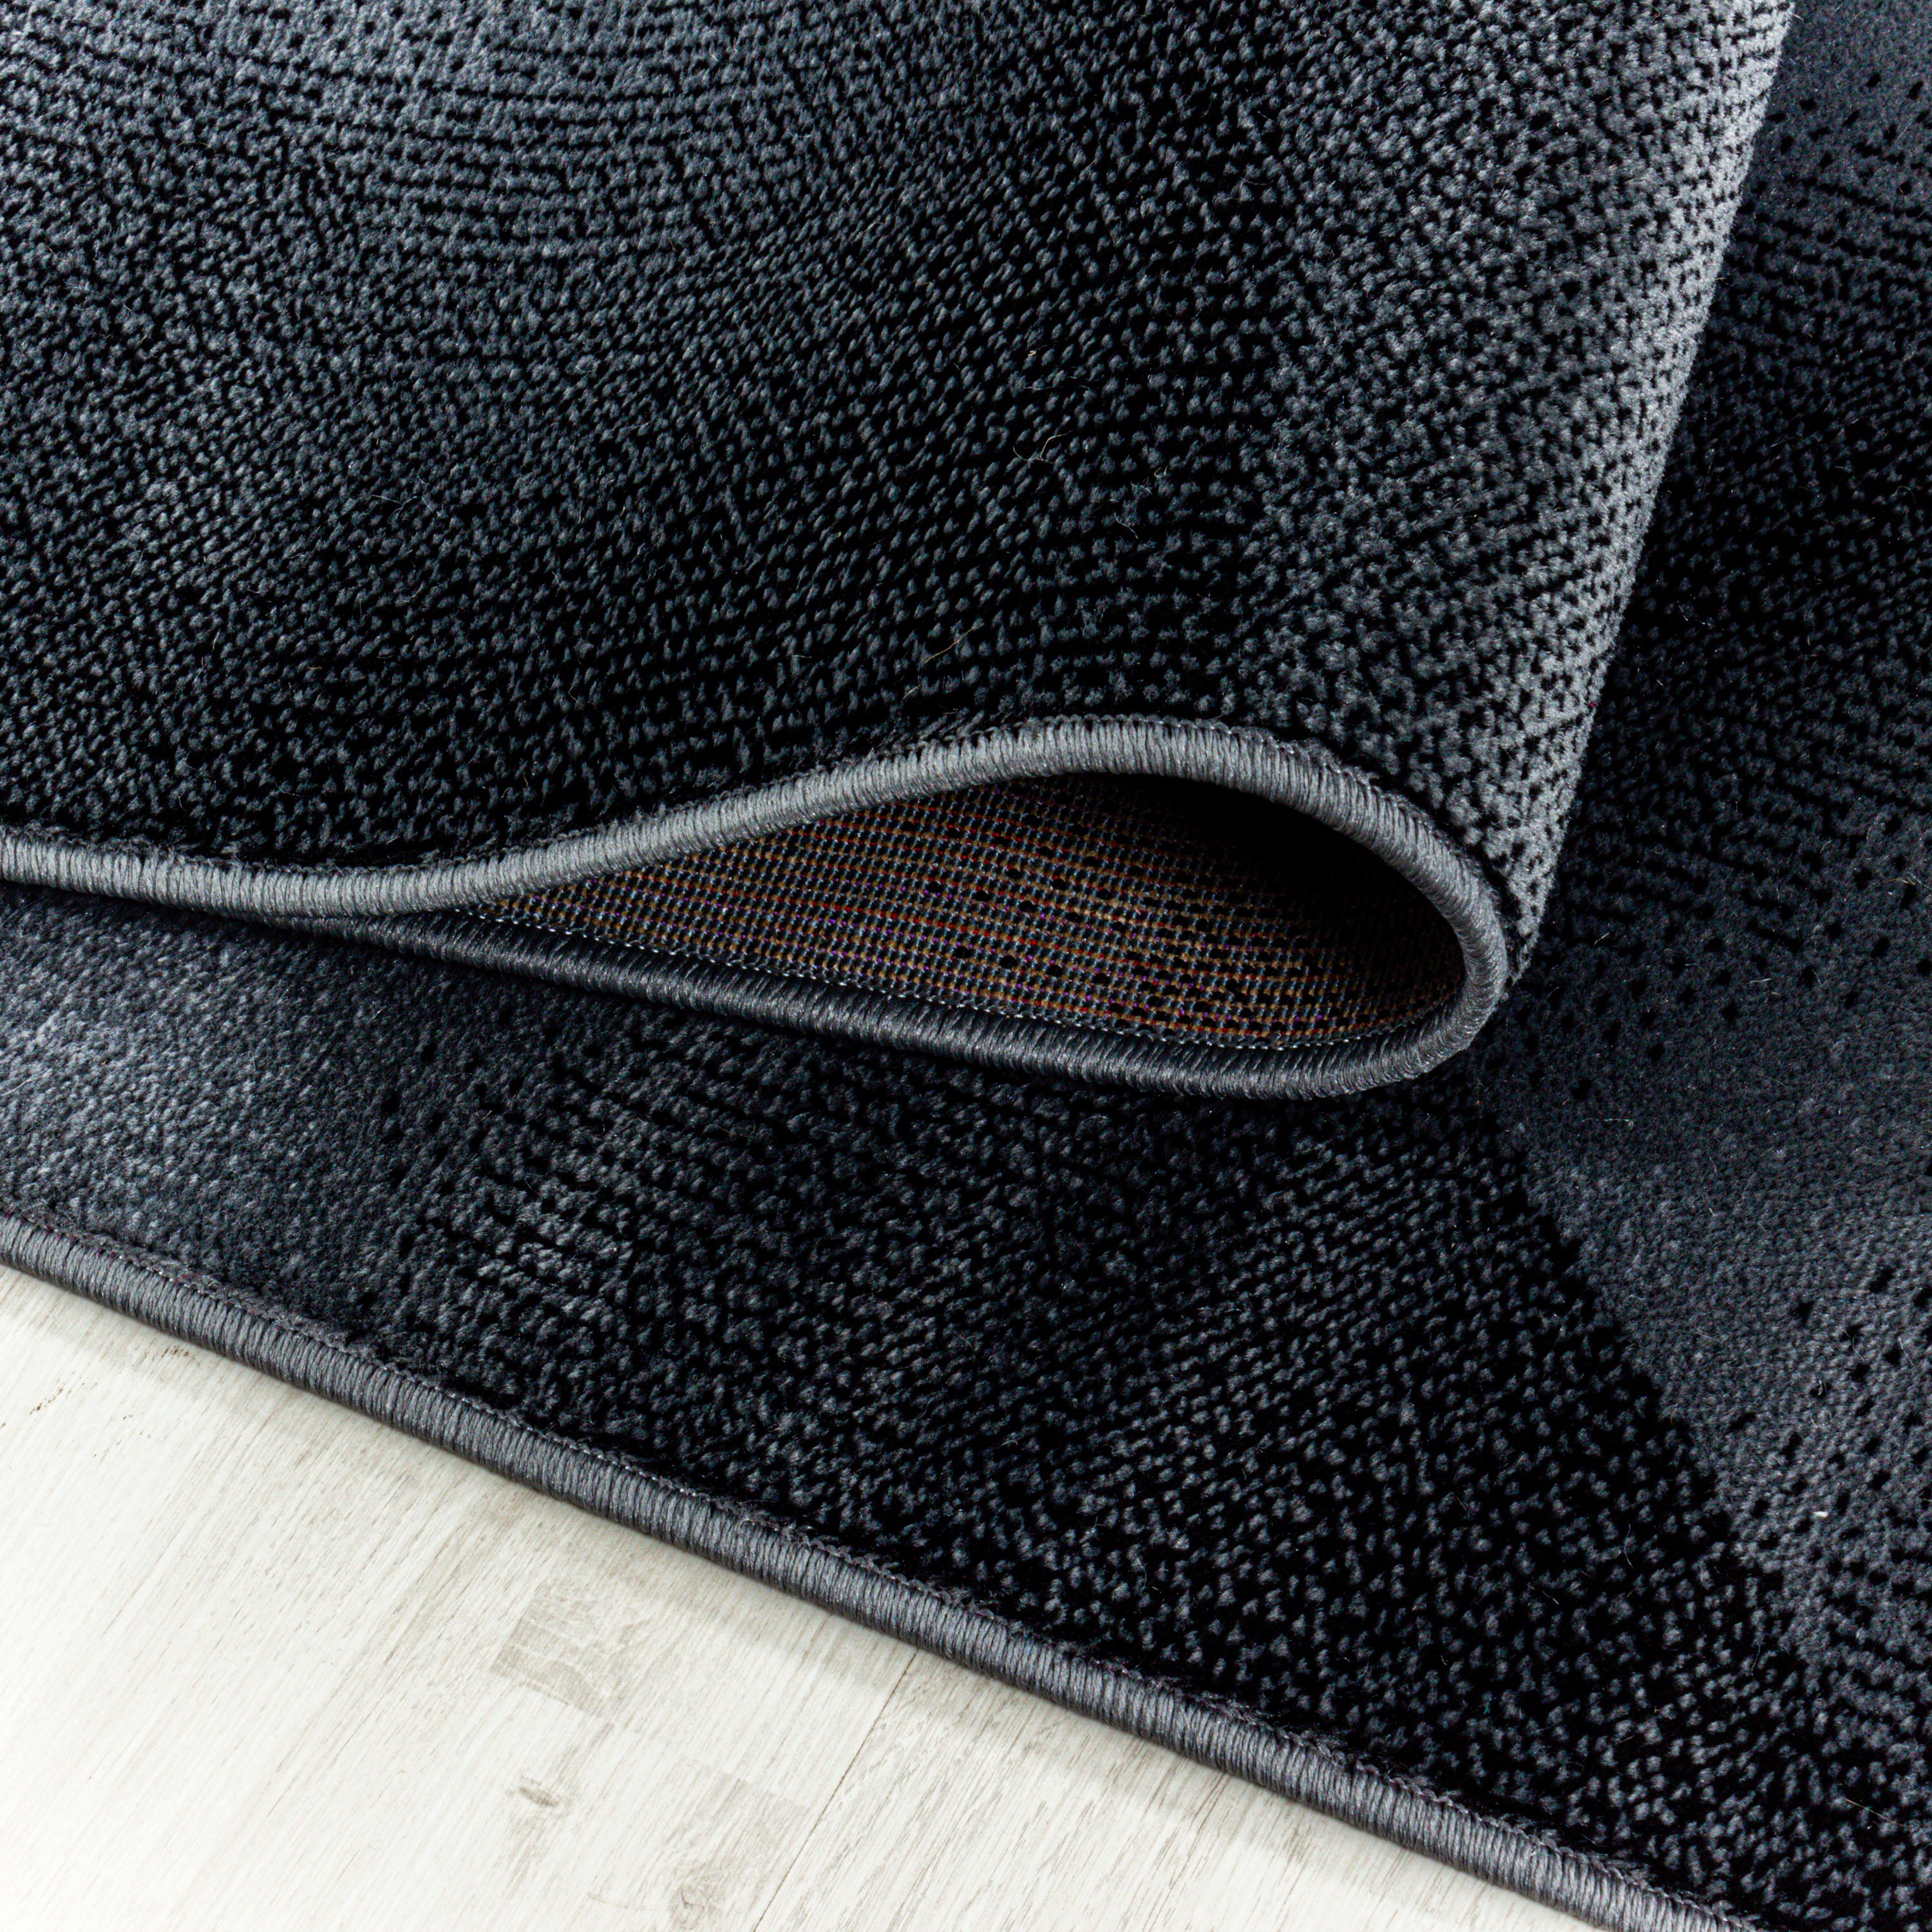 Kurzflor Teppich Set Schlafzimmer Läufer Streifen Wellen Design 3 Teile Schwarz